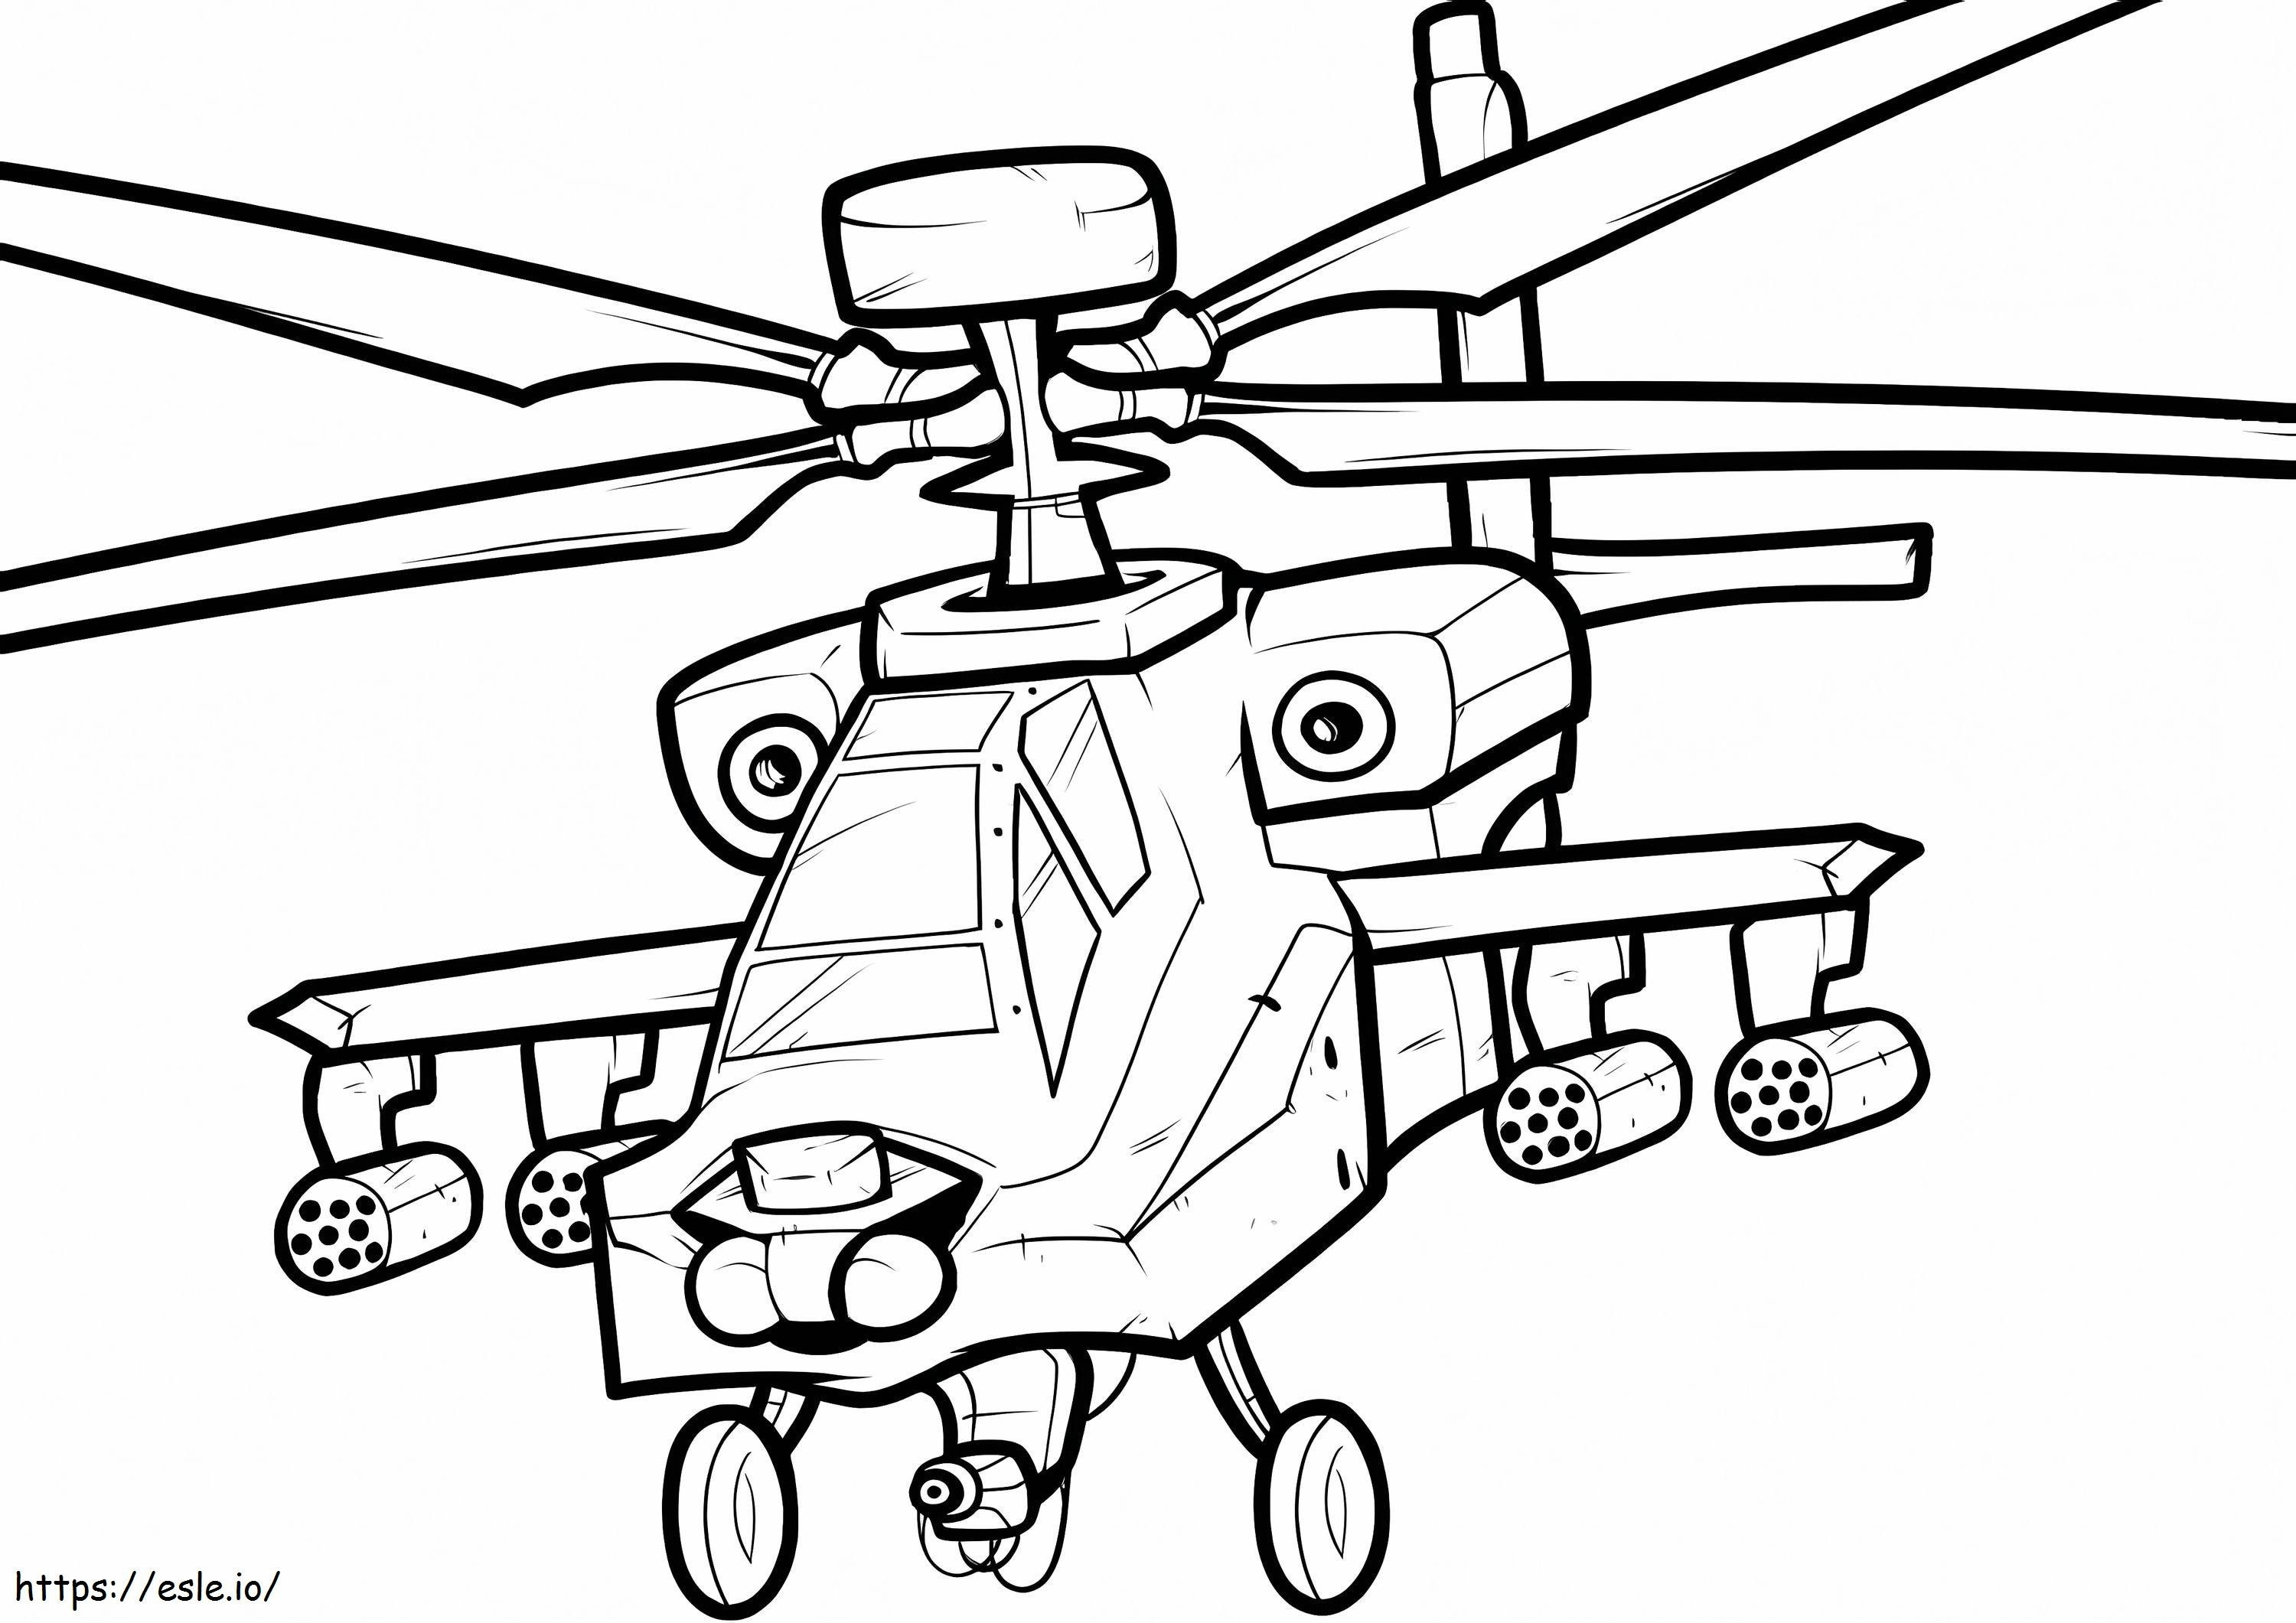 Oorlogshelikopter kleurplaat kleurplaat